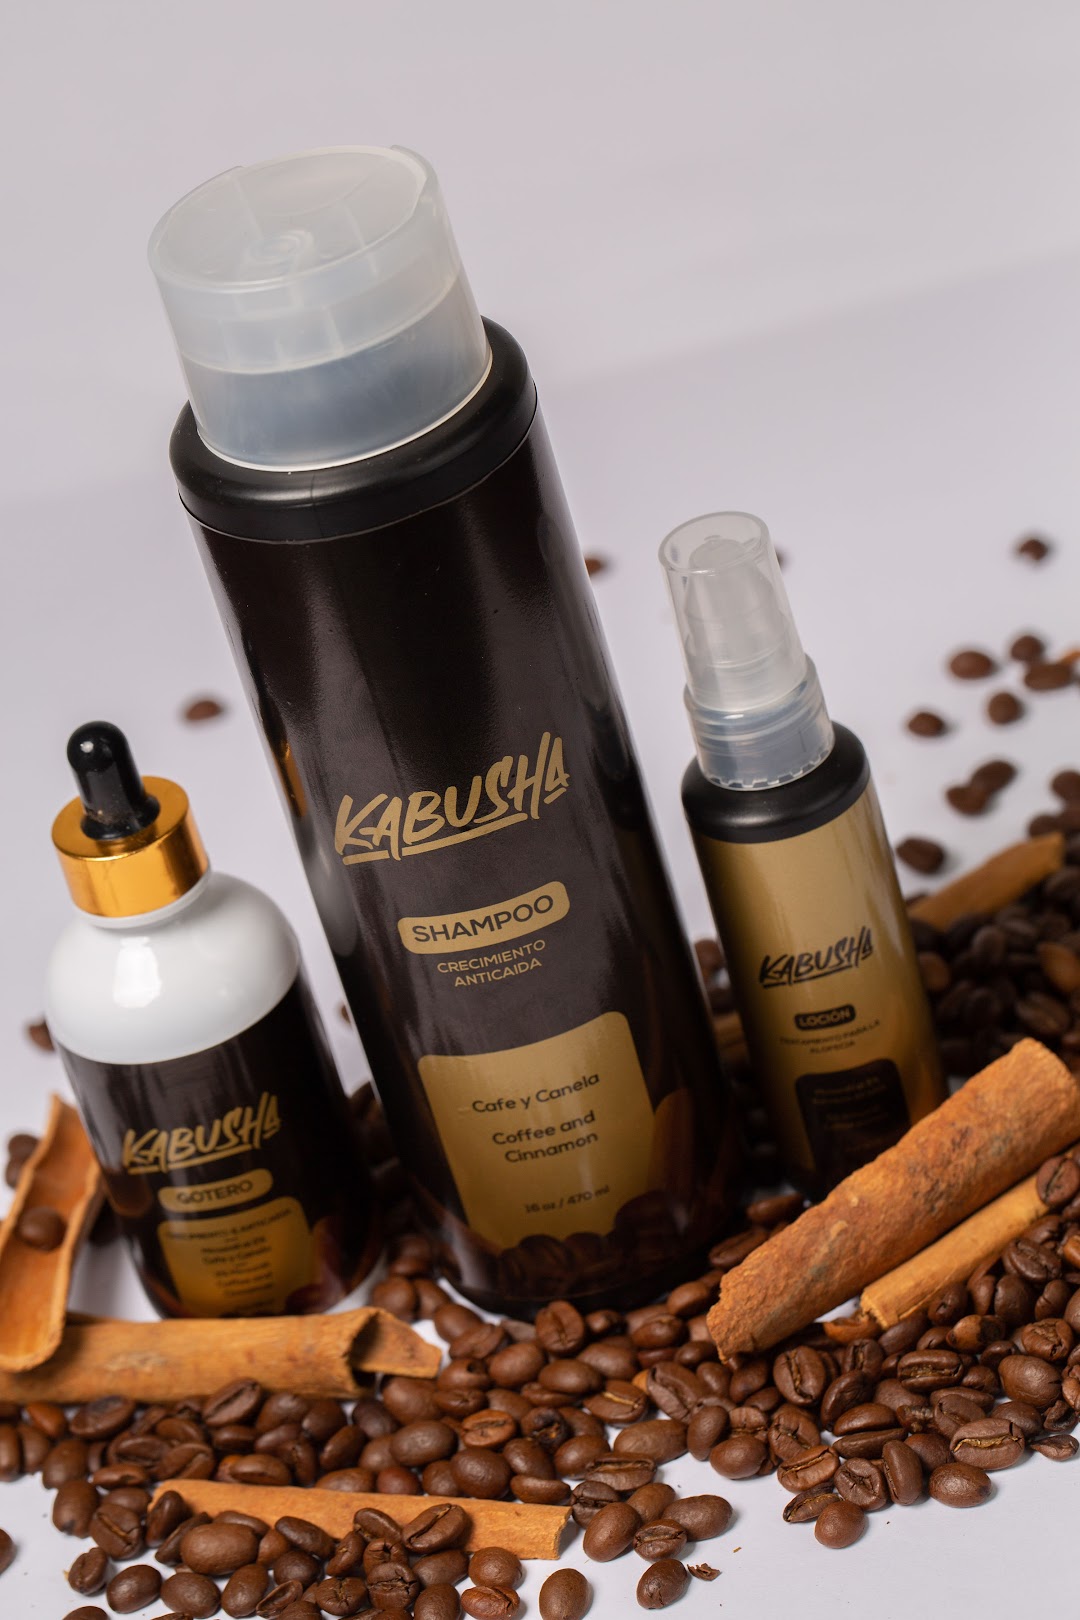 Kabusha Products